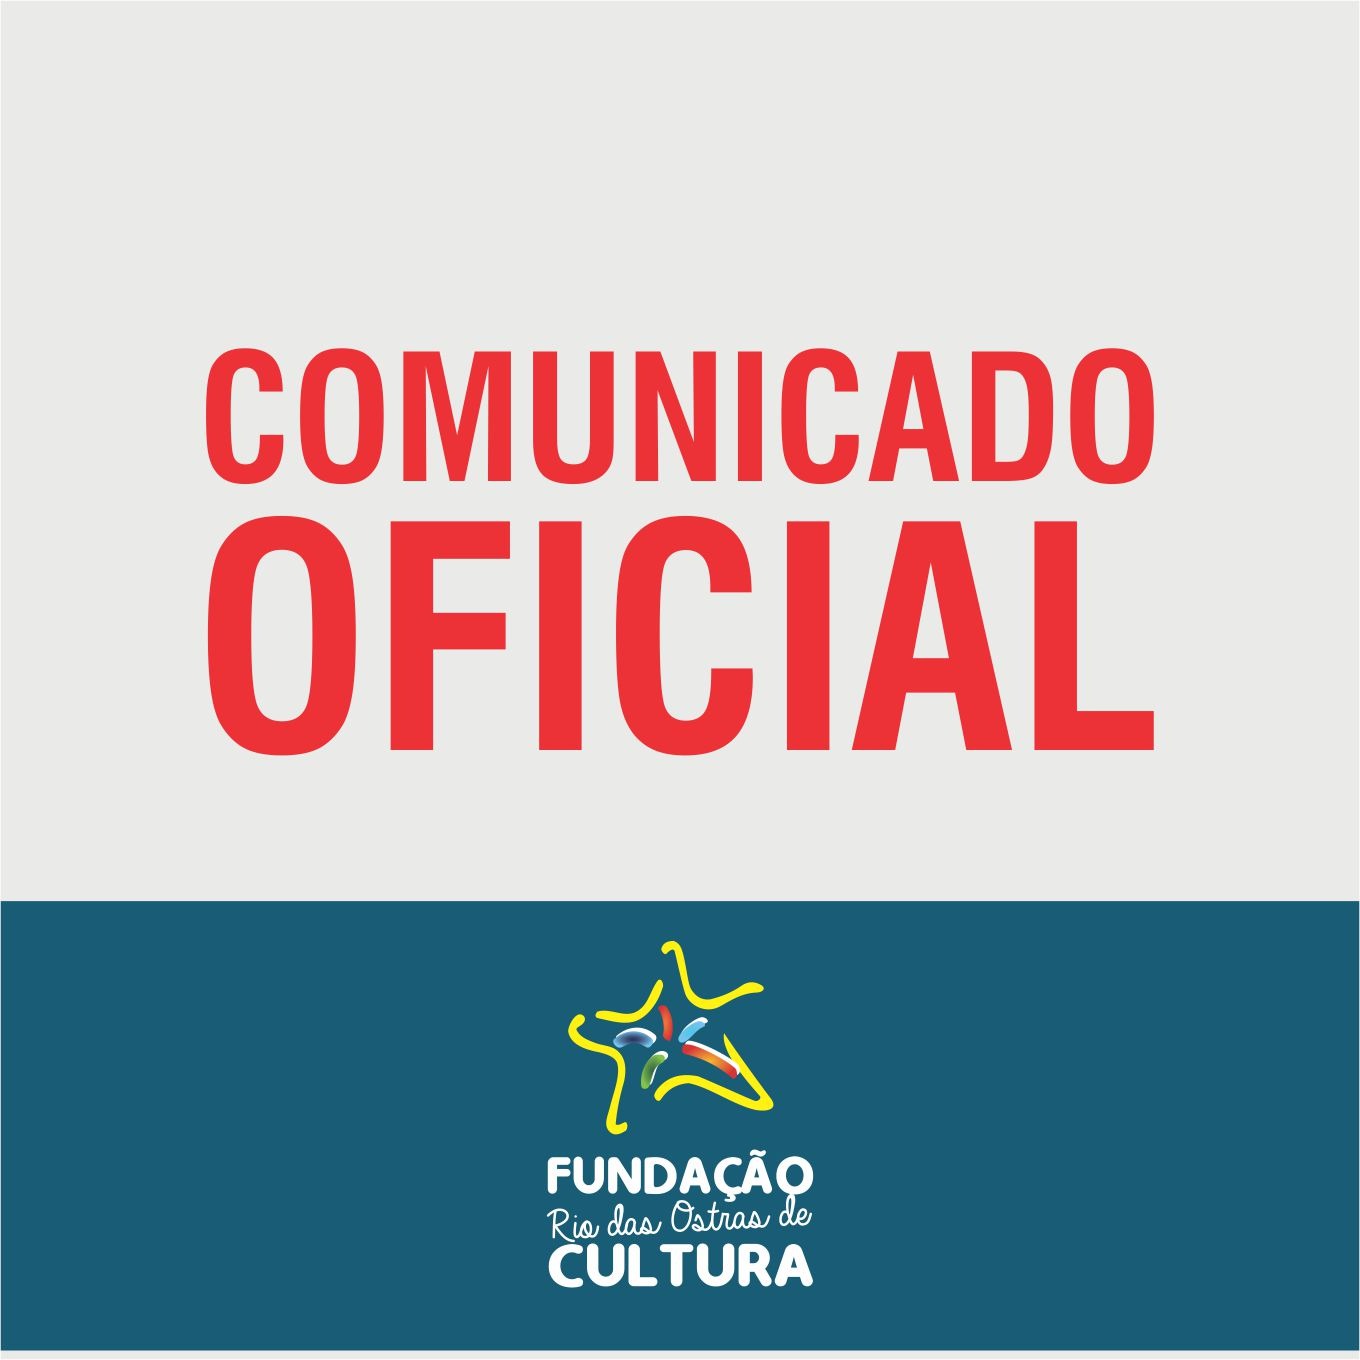 Editais da Fundação Rio das Ostras de Cultura referentes à LPG estão suspensos temporariamente